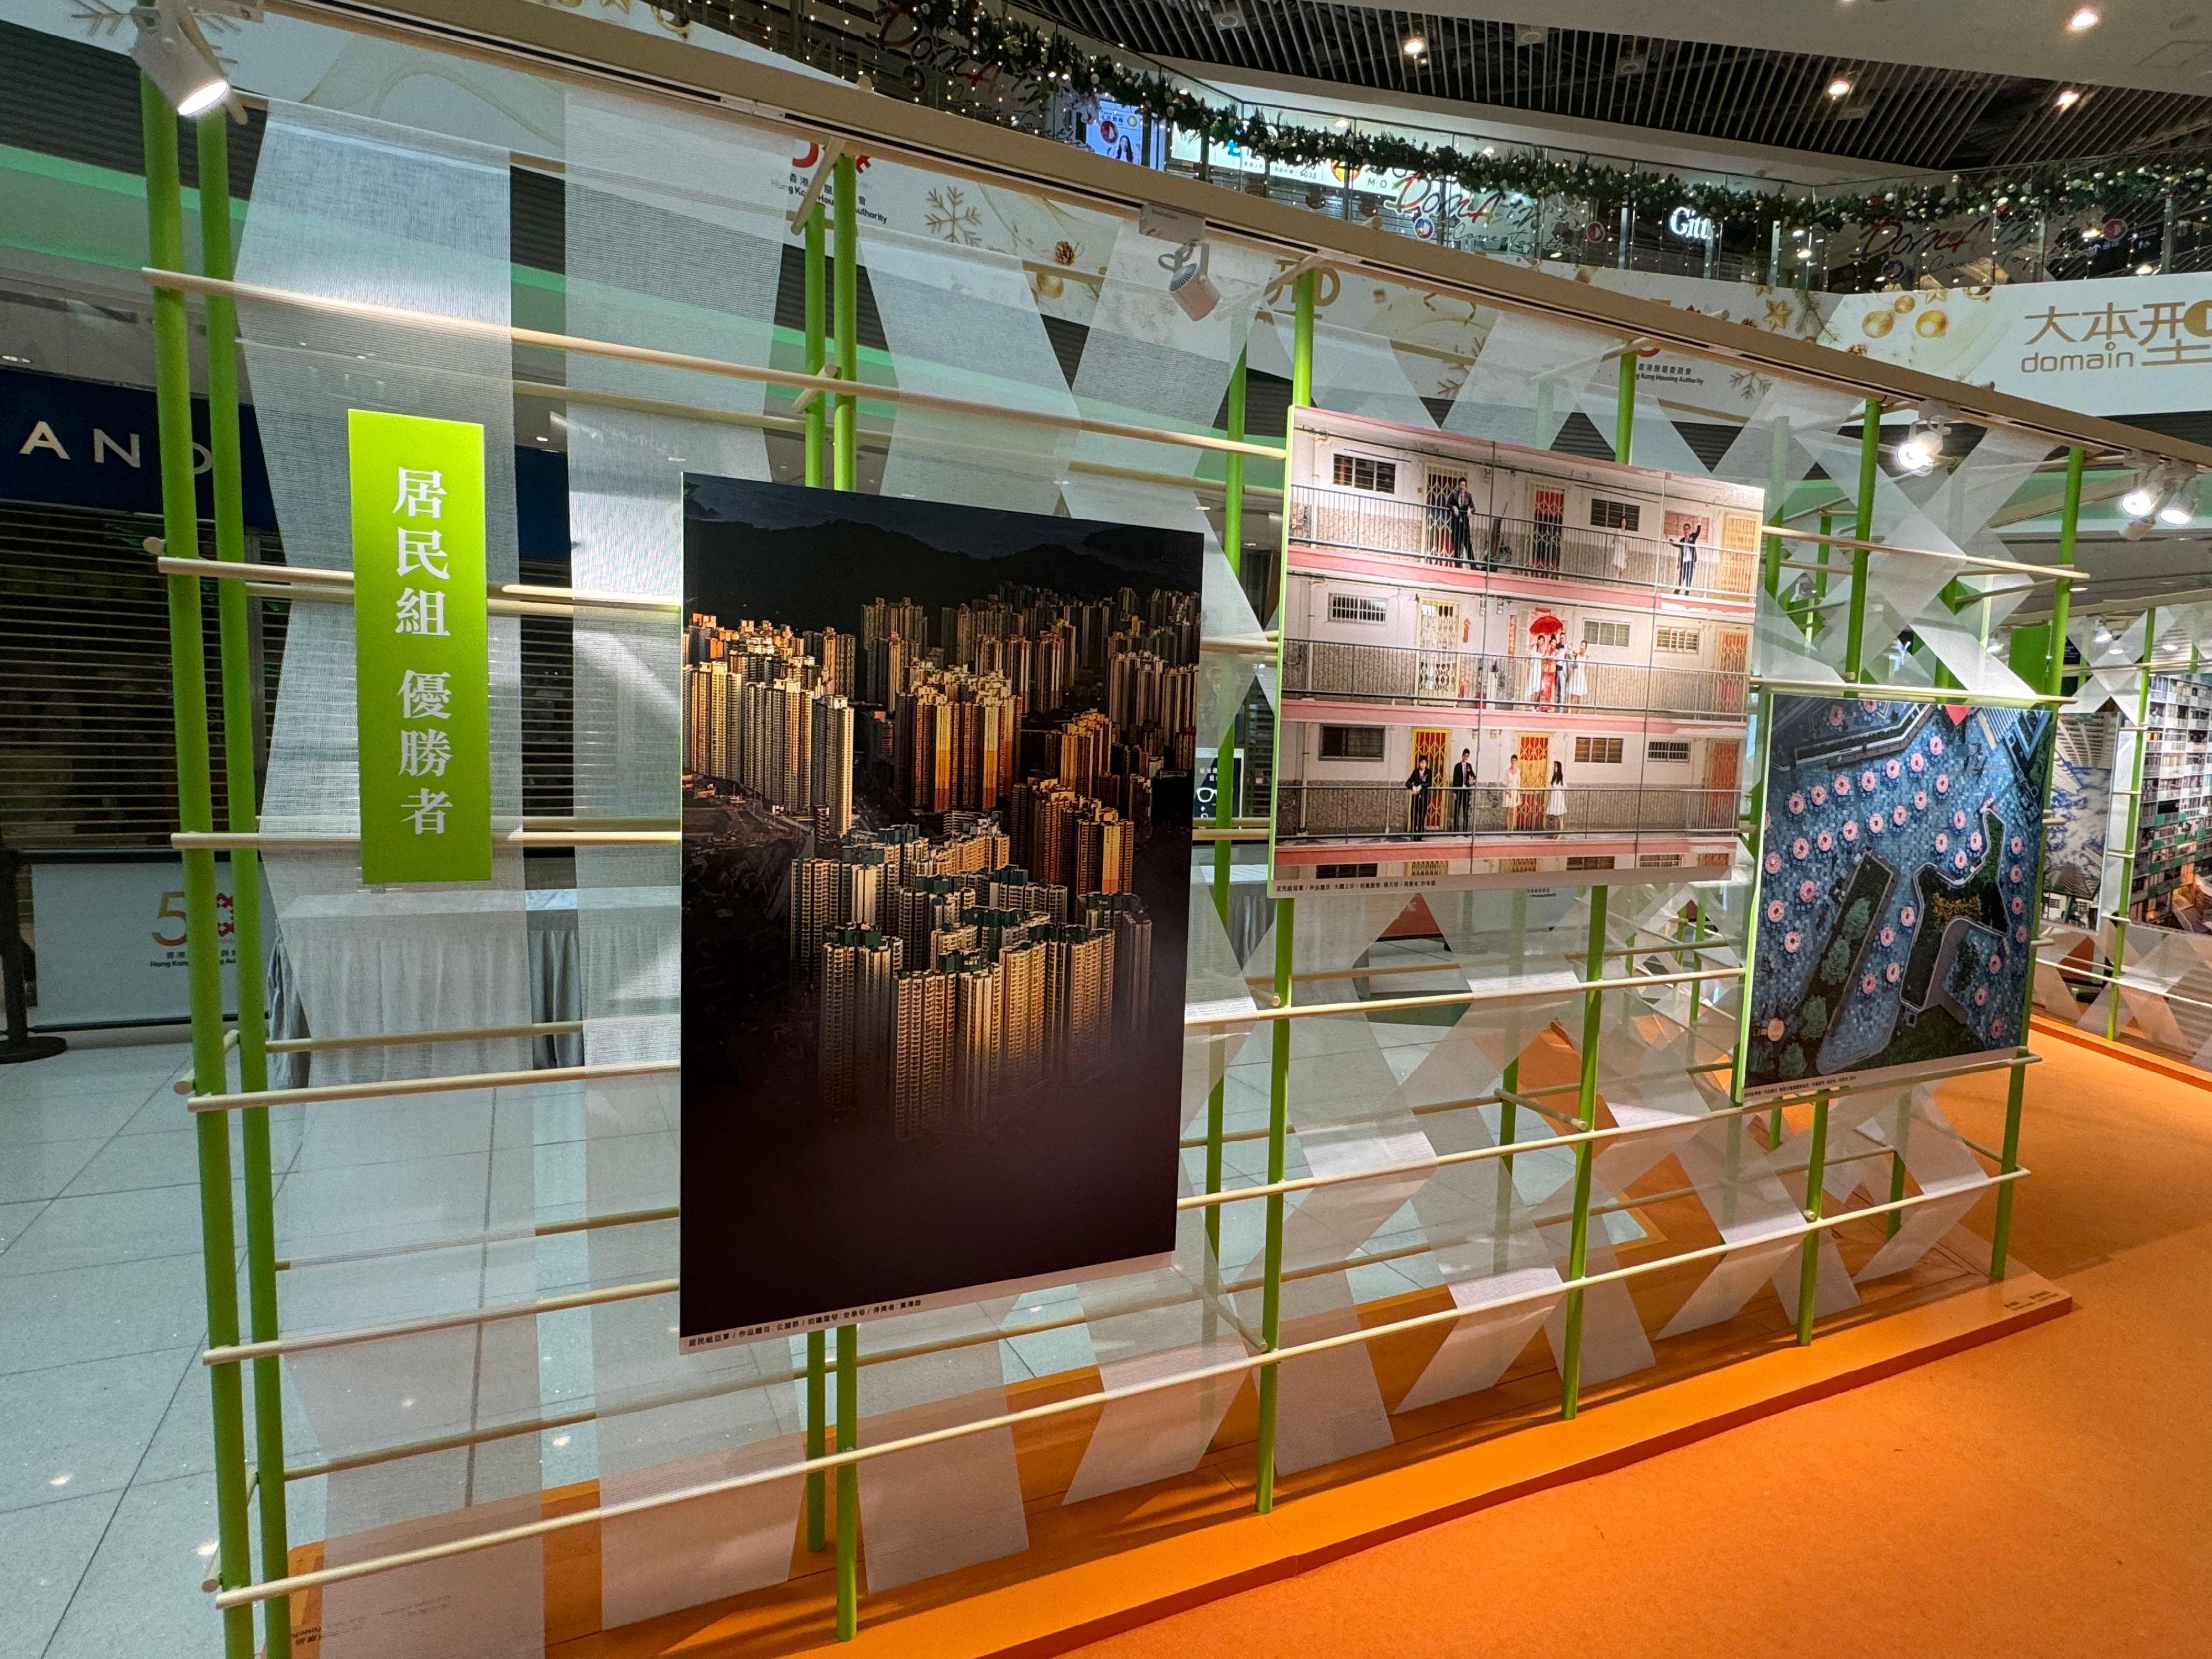 「房委會50周年公屋攝影比賽」優勝作品在大本型商場中庭展出。